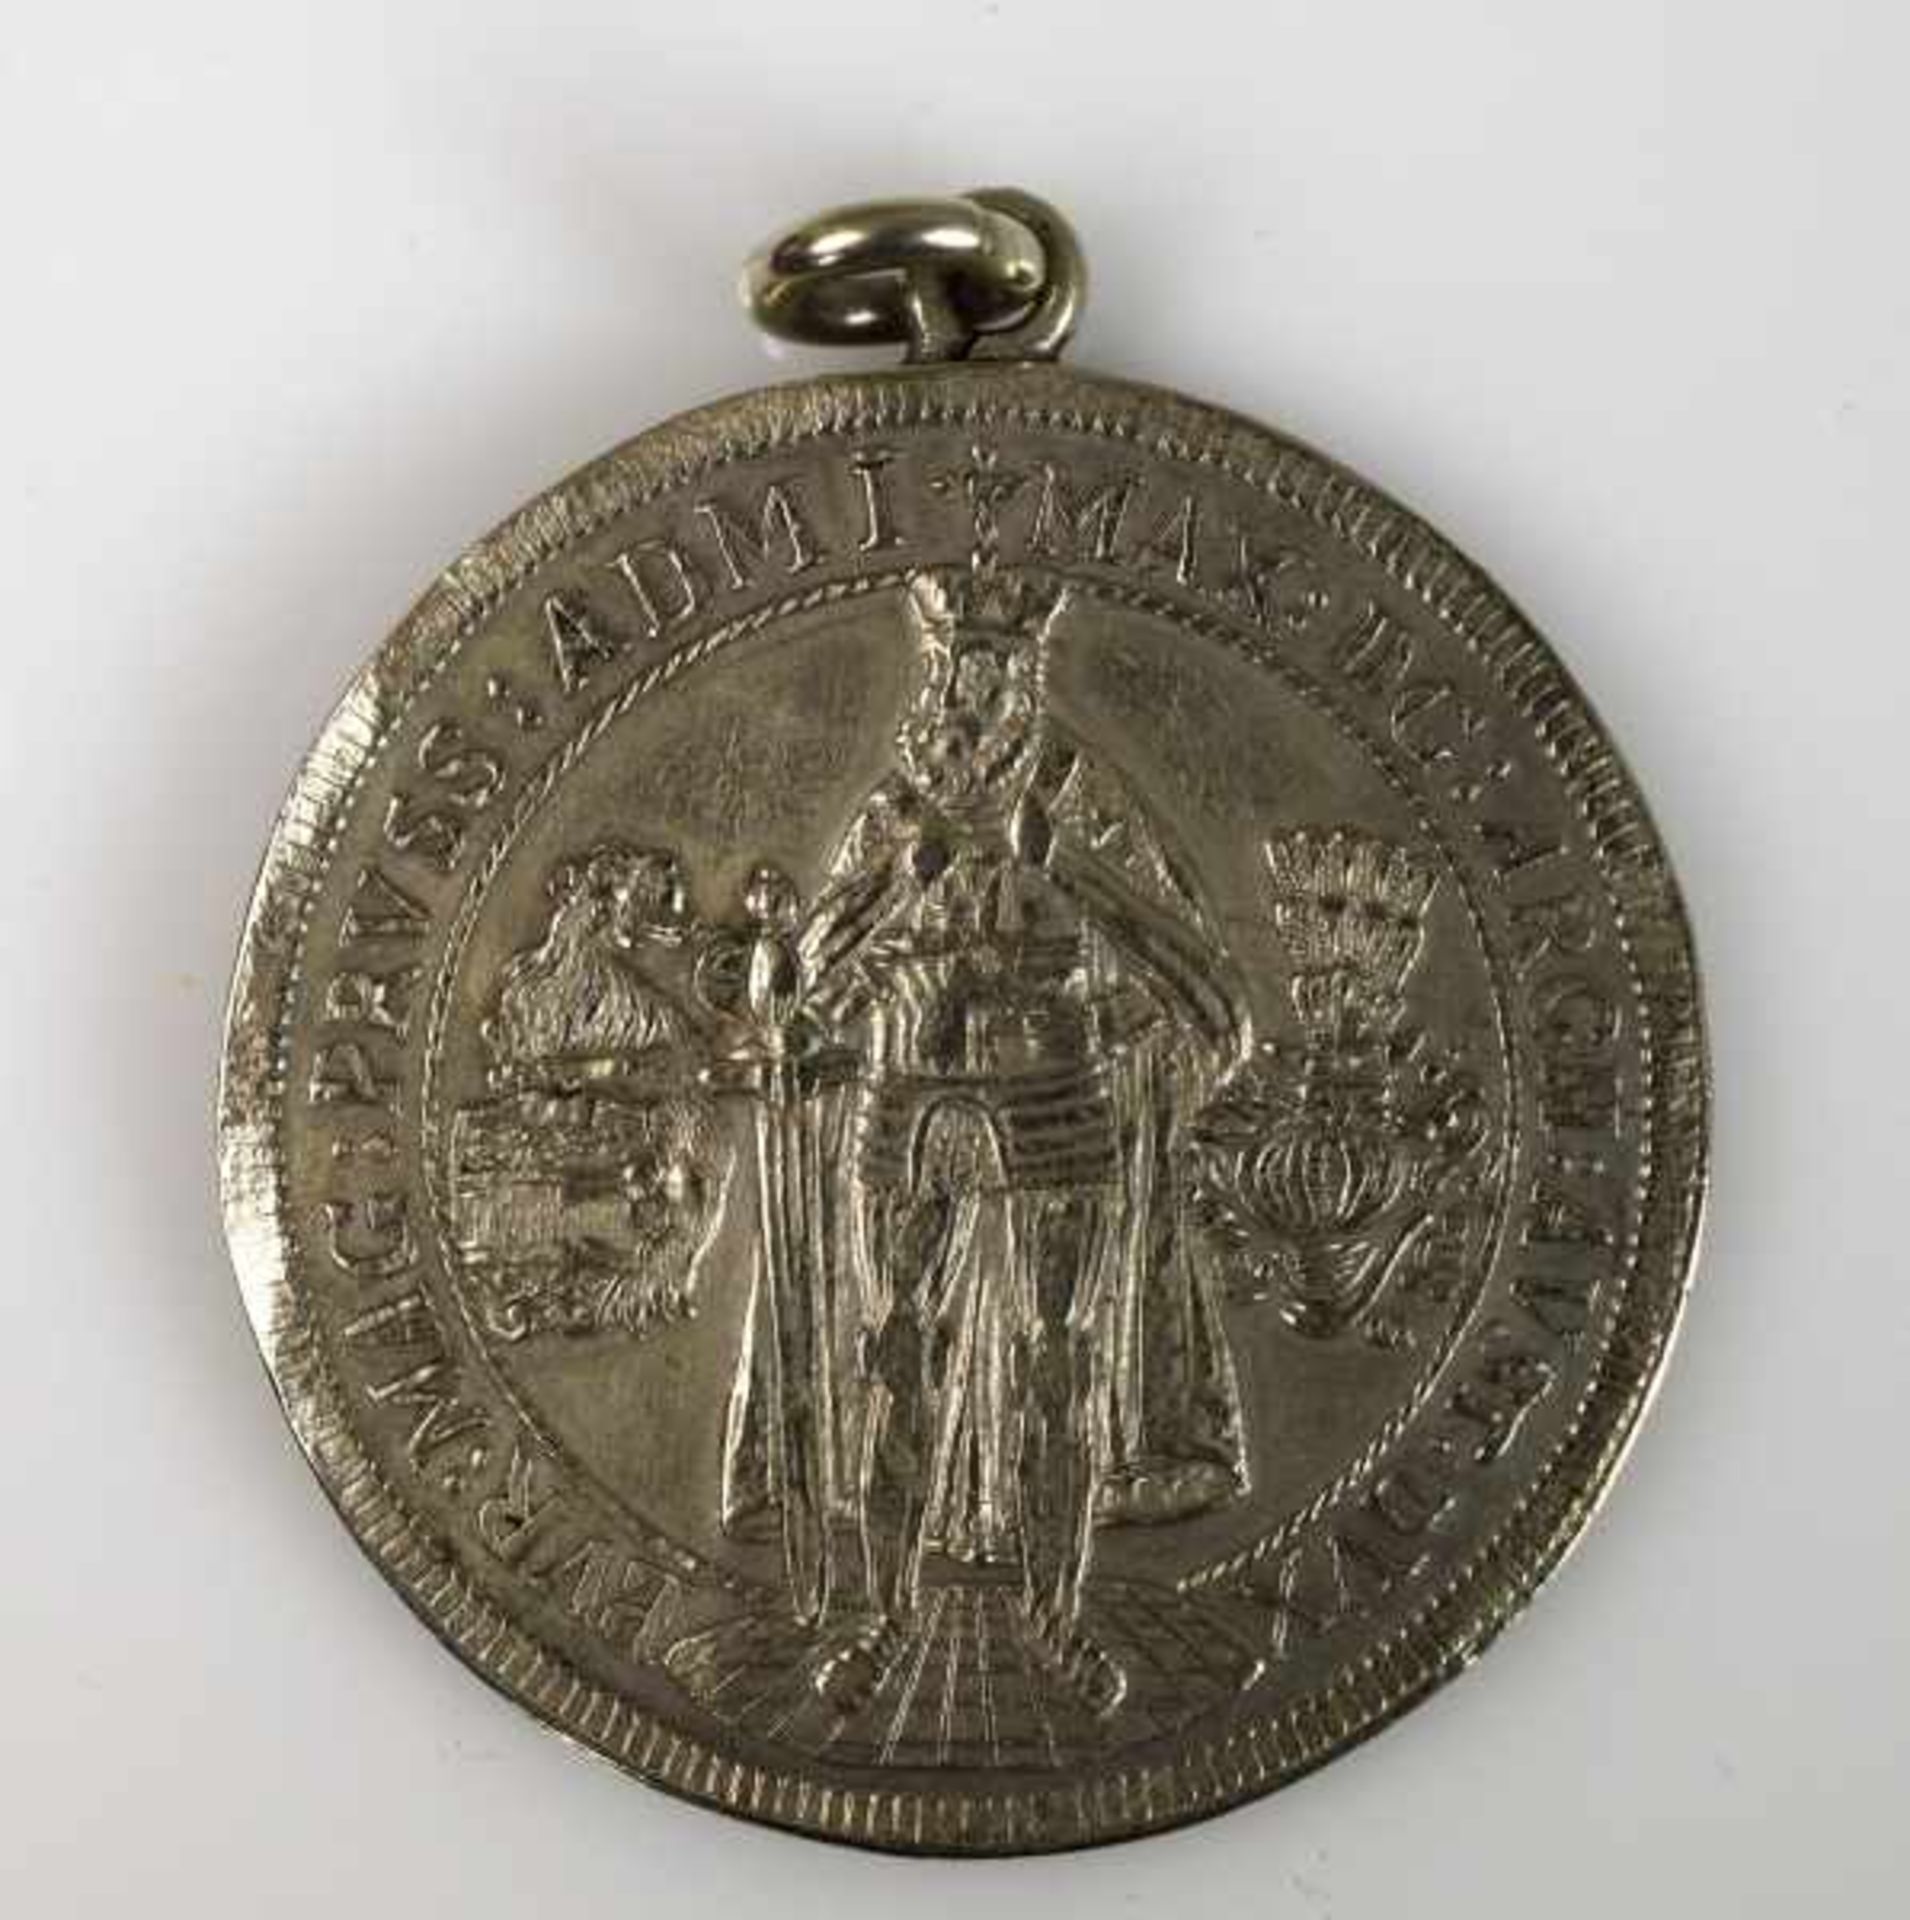 MÜNZANHÄNGER Prägung 1663, Alter. 356 Jahre, D 4,3 cm / 8 g, Kaiser/ König Max, Deutscher Orden - Image 2 of 2